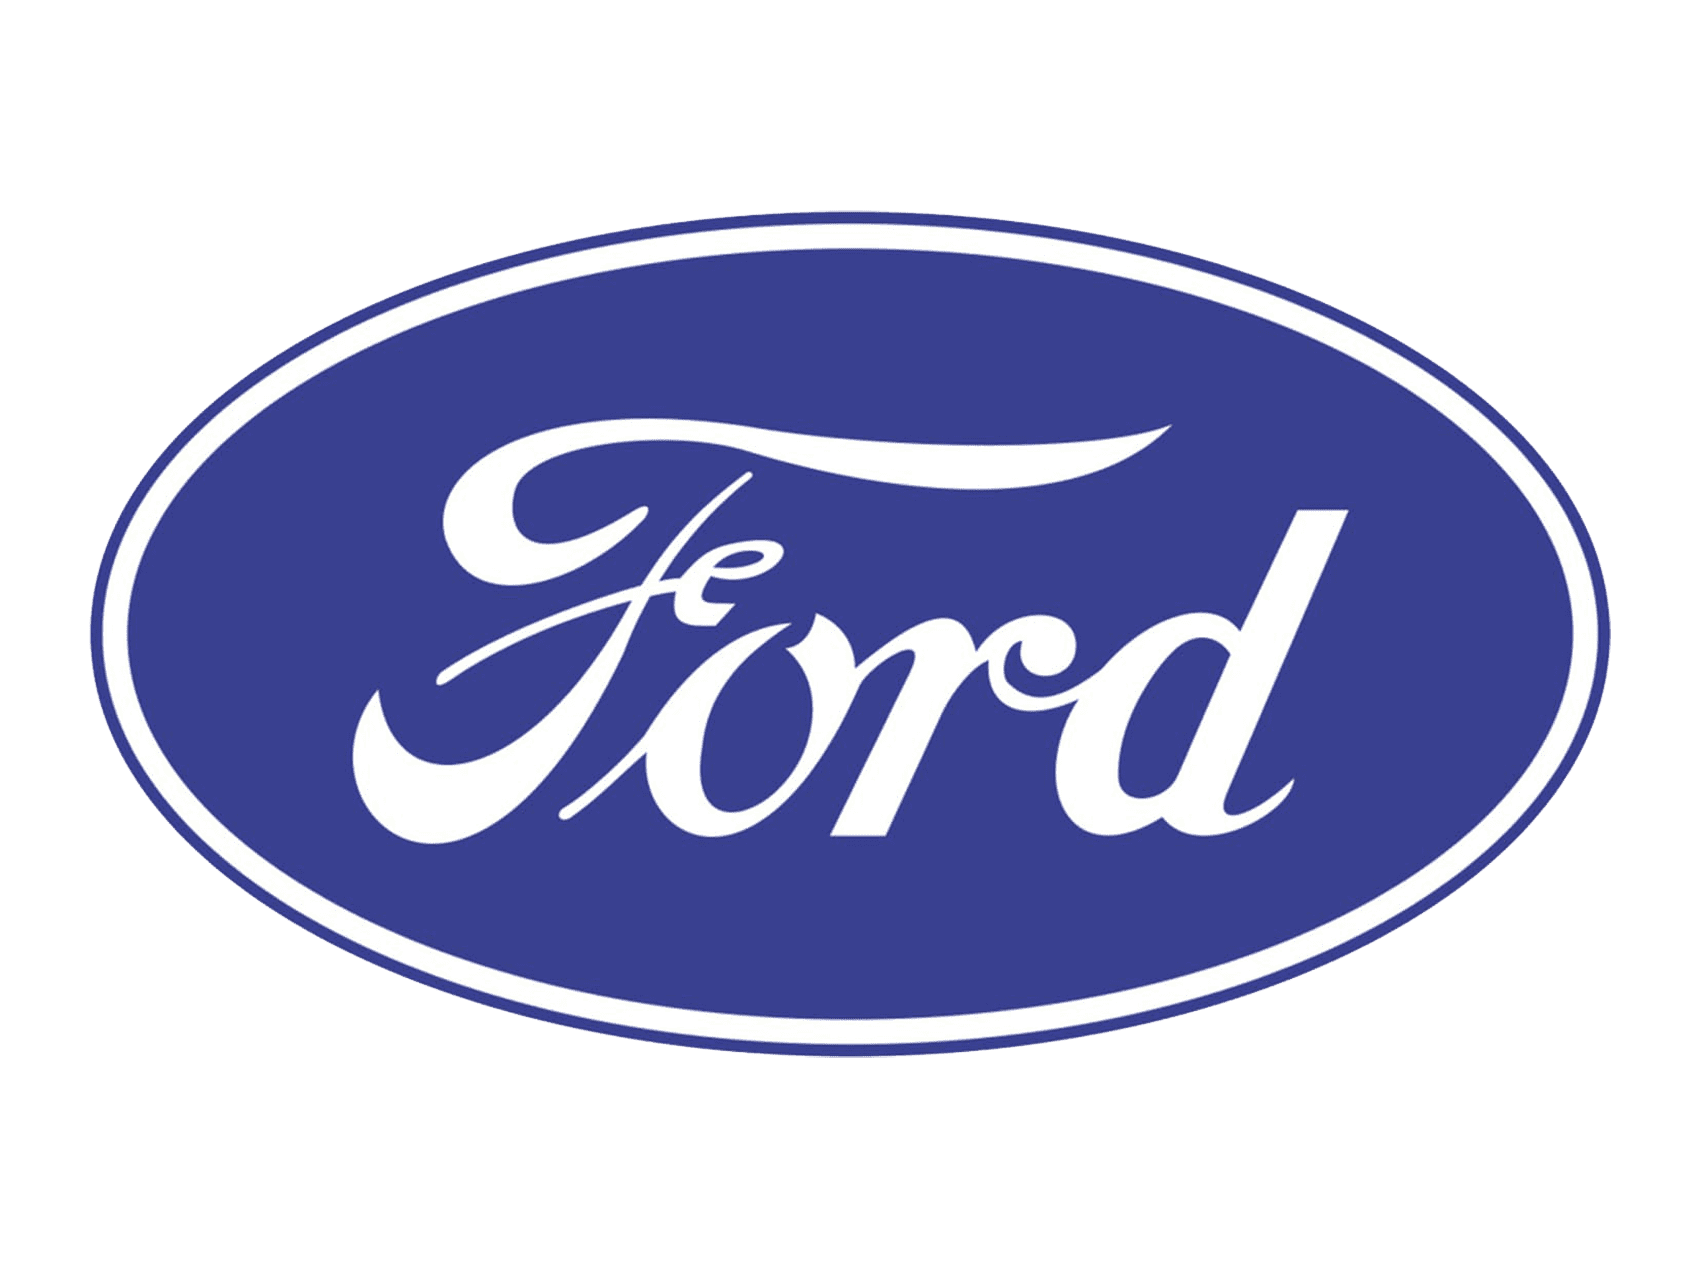 Ford Logo Png File Png Mart Images